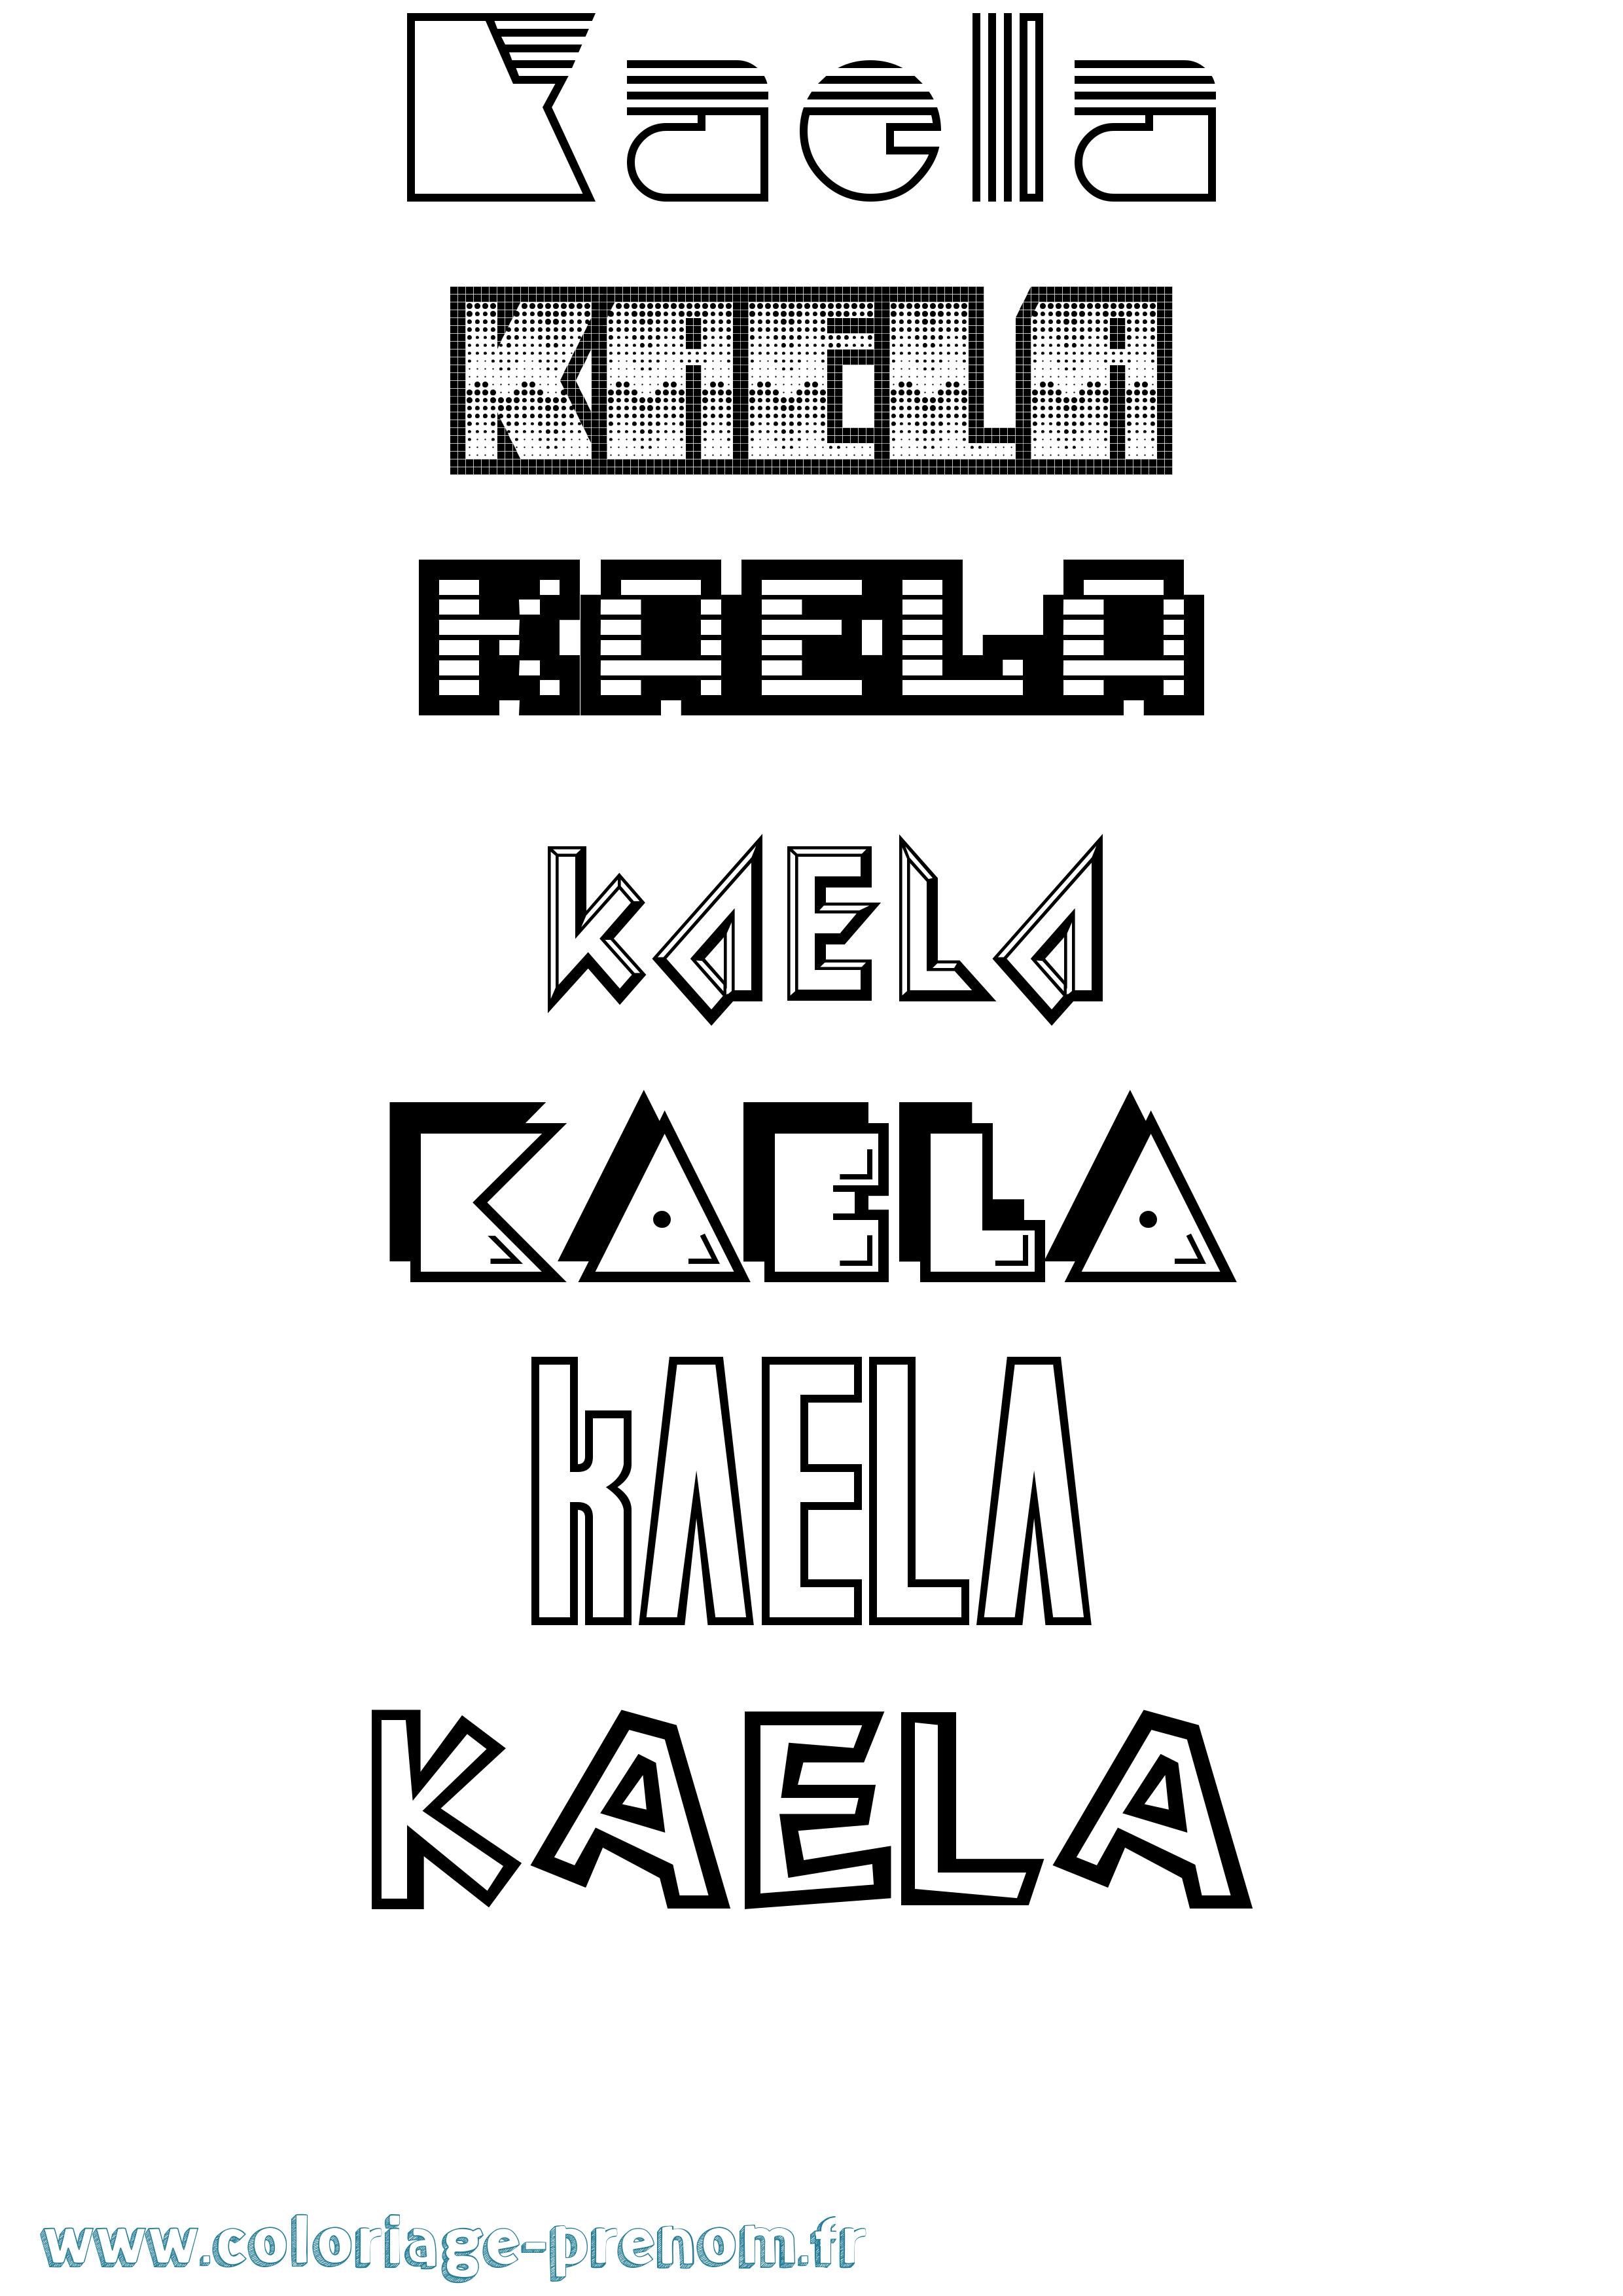 Coloriage prénom Kaela Jeux Vidéos